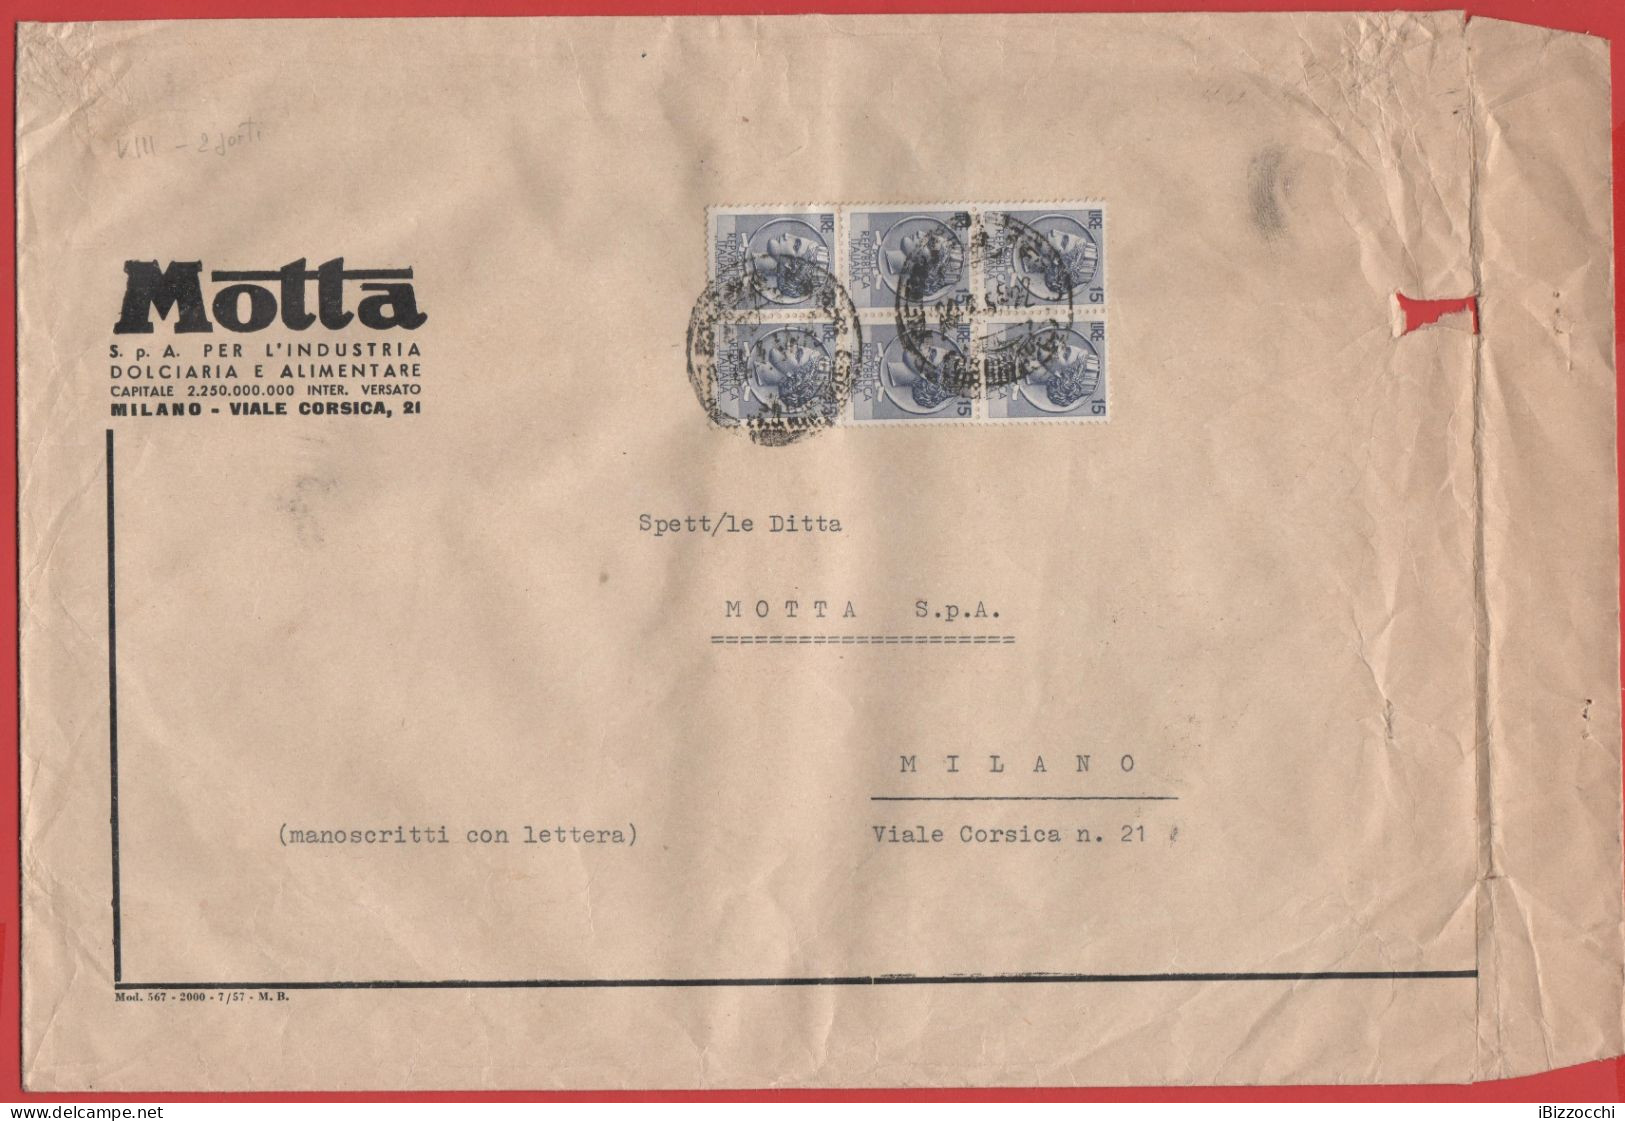 ITALIA - Storia Postale Repubblica - 1957 -  6x 15 Antica Moneta Siracusana - Busta Di Grande Formato - Motta  - Viaggia - 1946-60: Marcofilia